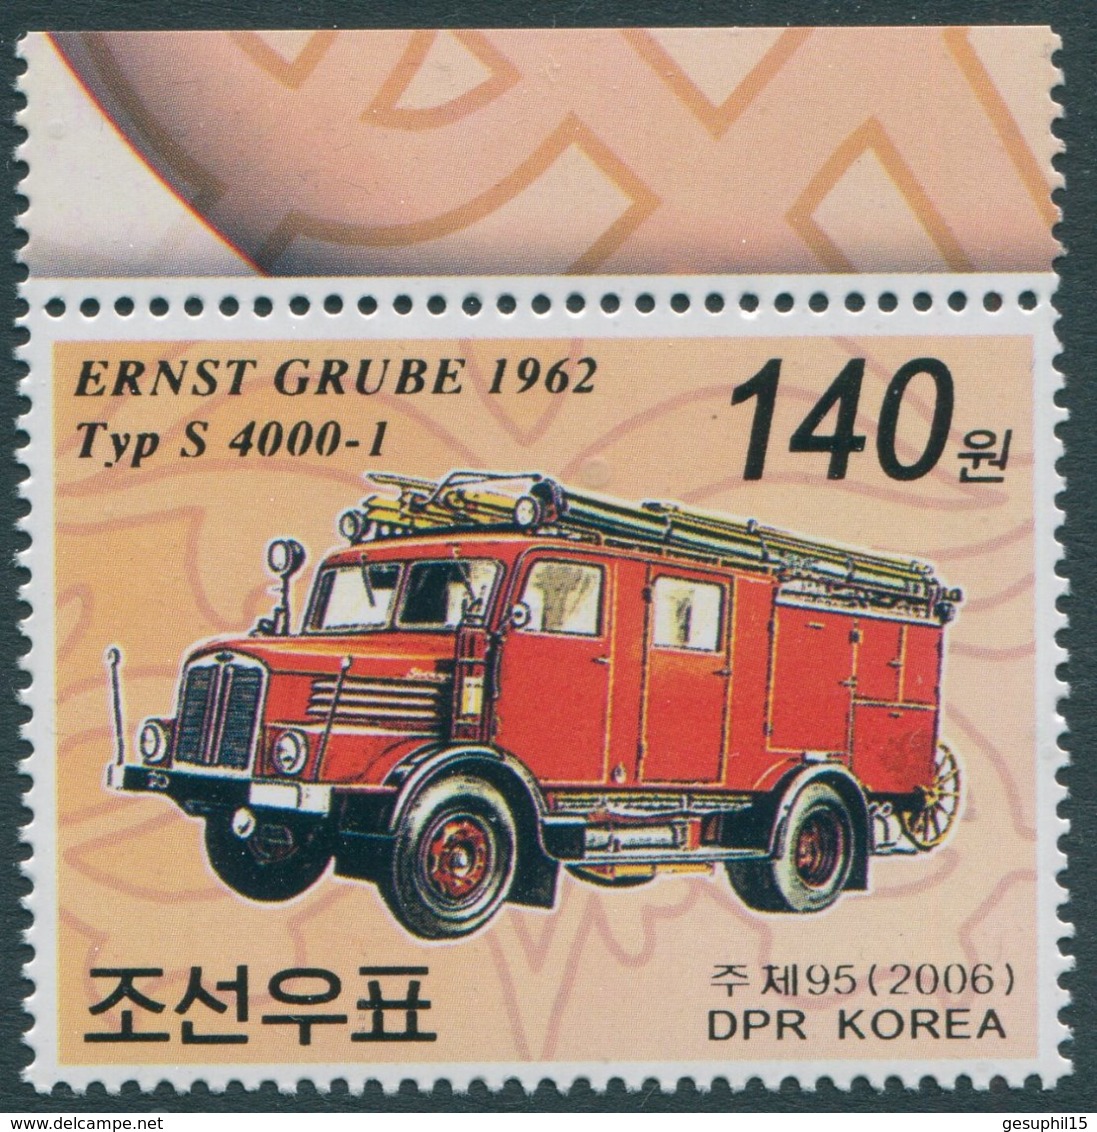 KOREA NORD / MiNr. 5013 / Feuerwehrauto Typ S 4000-1 (VEB Kraftfahrzeugwerk „Ernst Grube“, 1962) / Postfrisch / ** / MNH - Korea (Nord-)